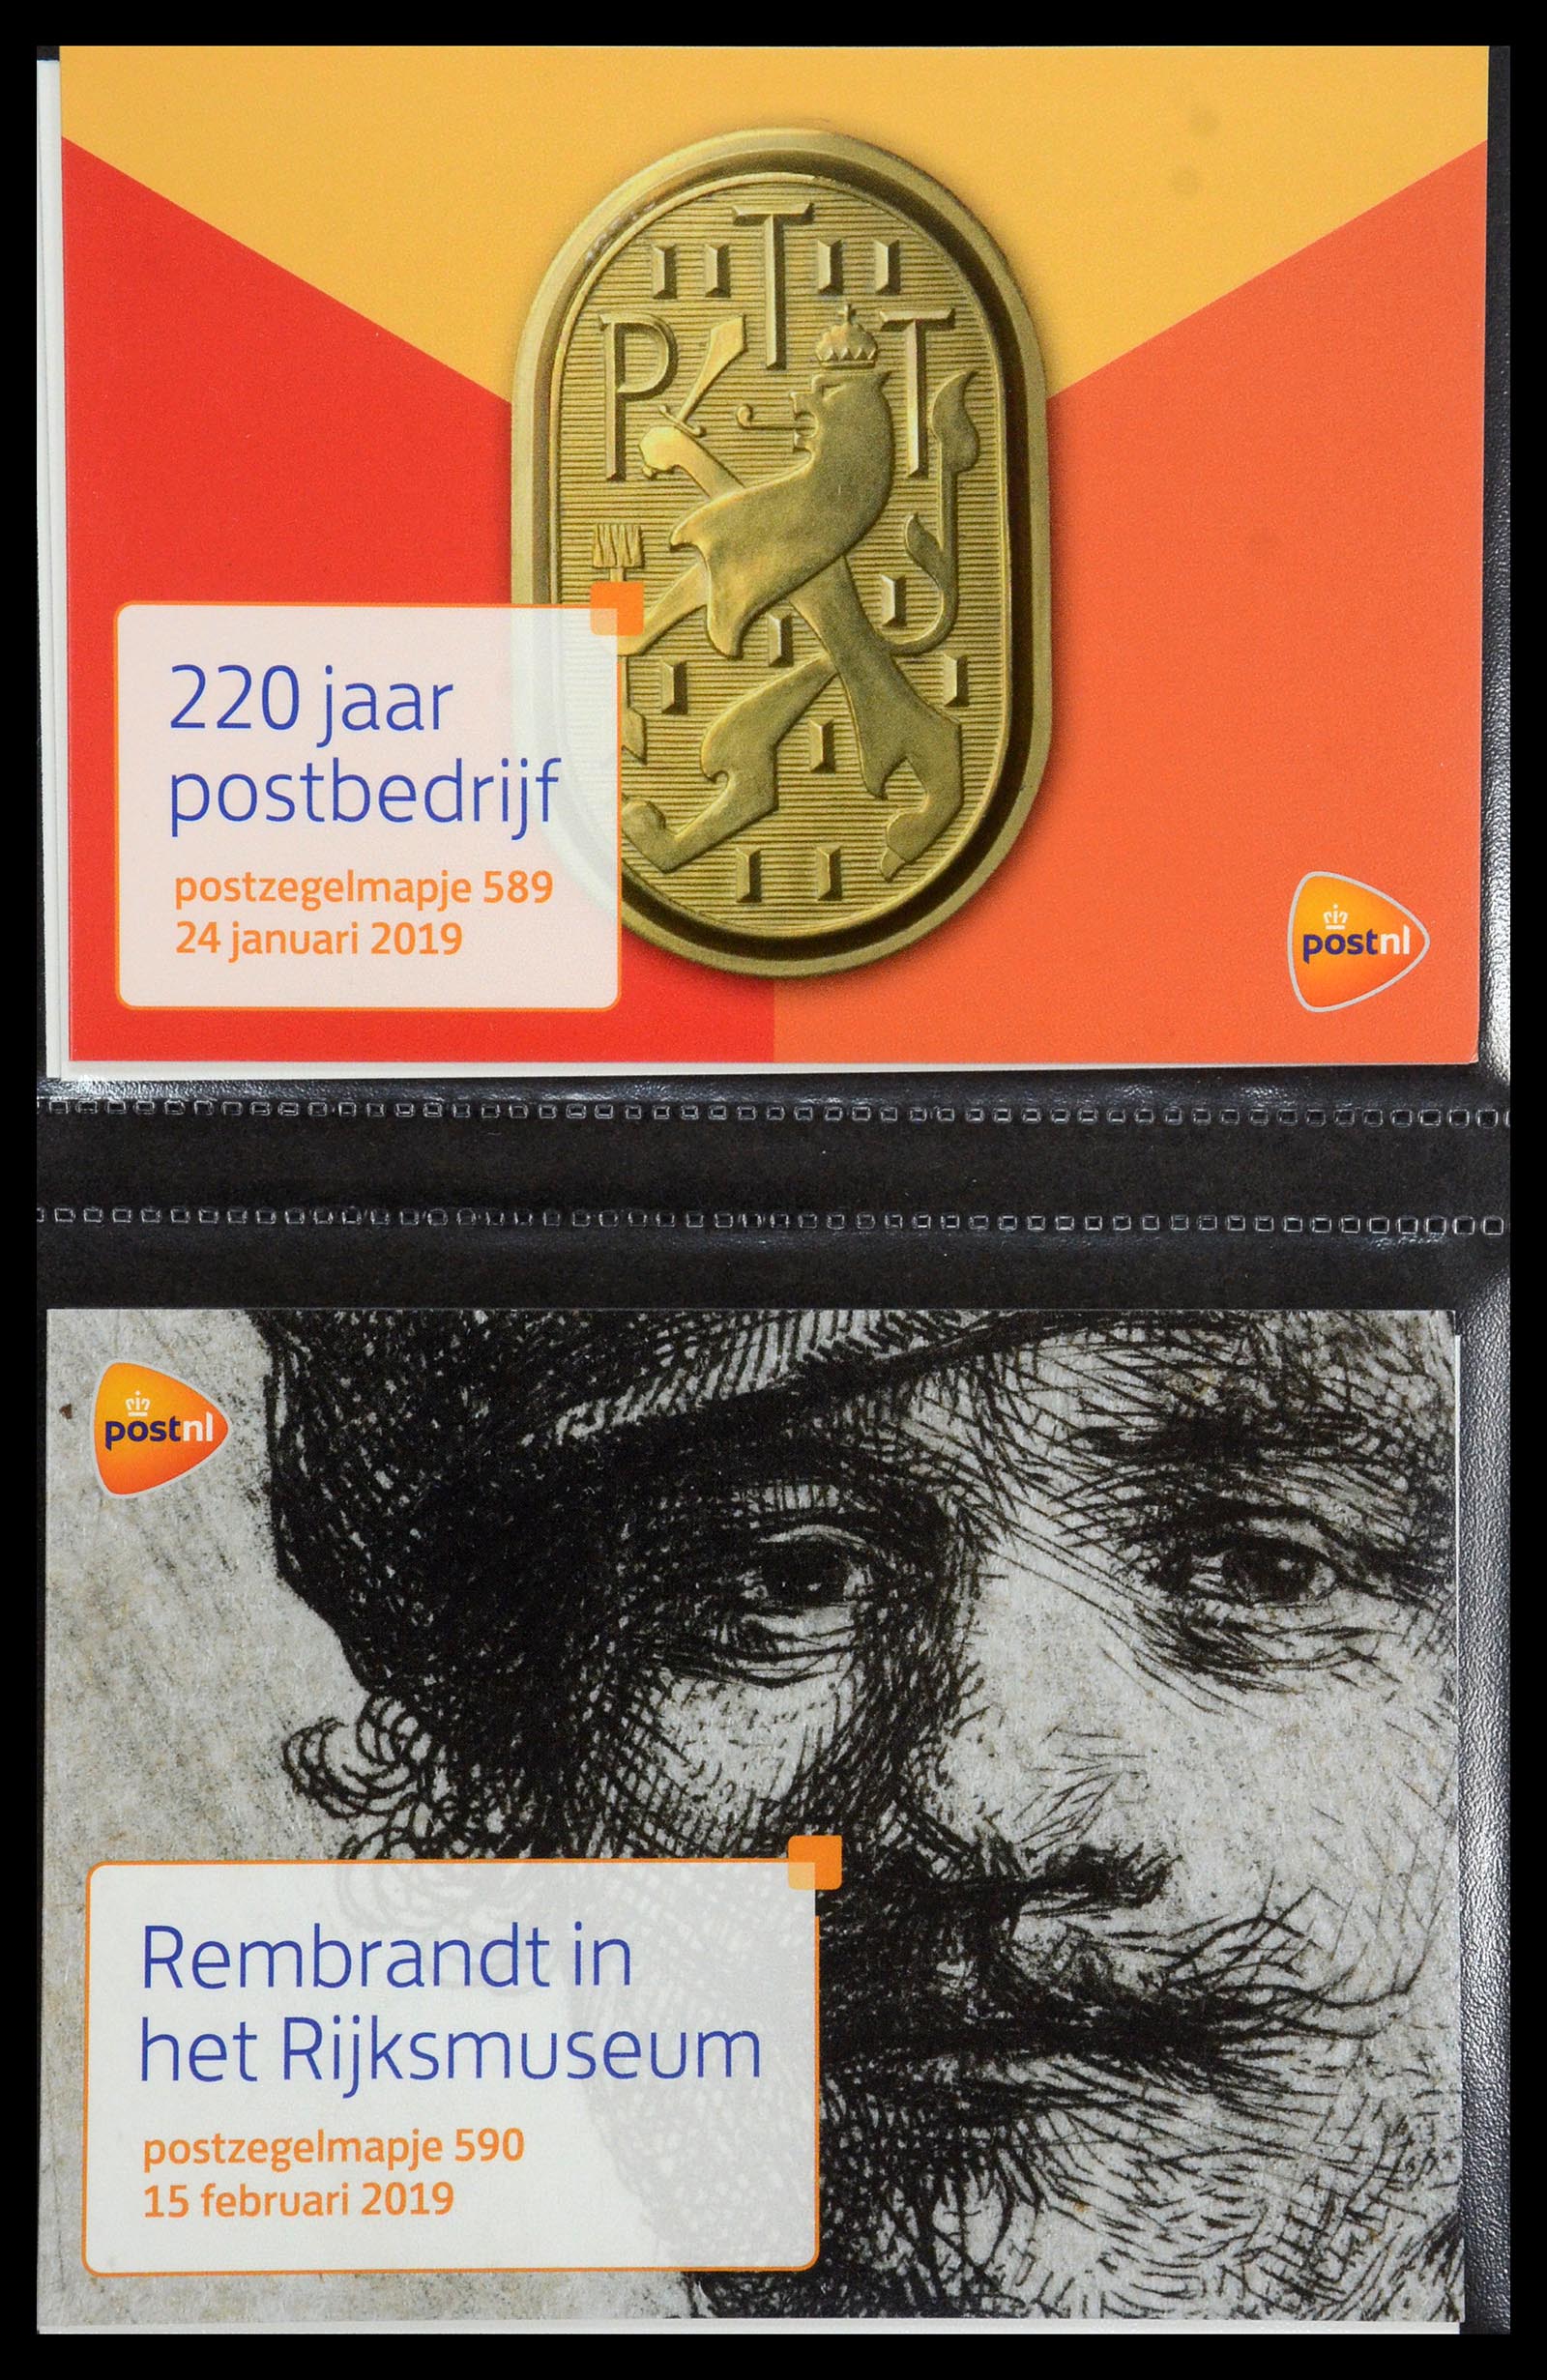 35144 357 - Stamp Collection 35144 Netherlands PTT presentation packs 1982-2021!